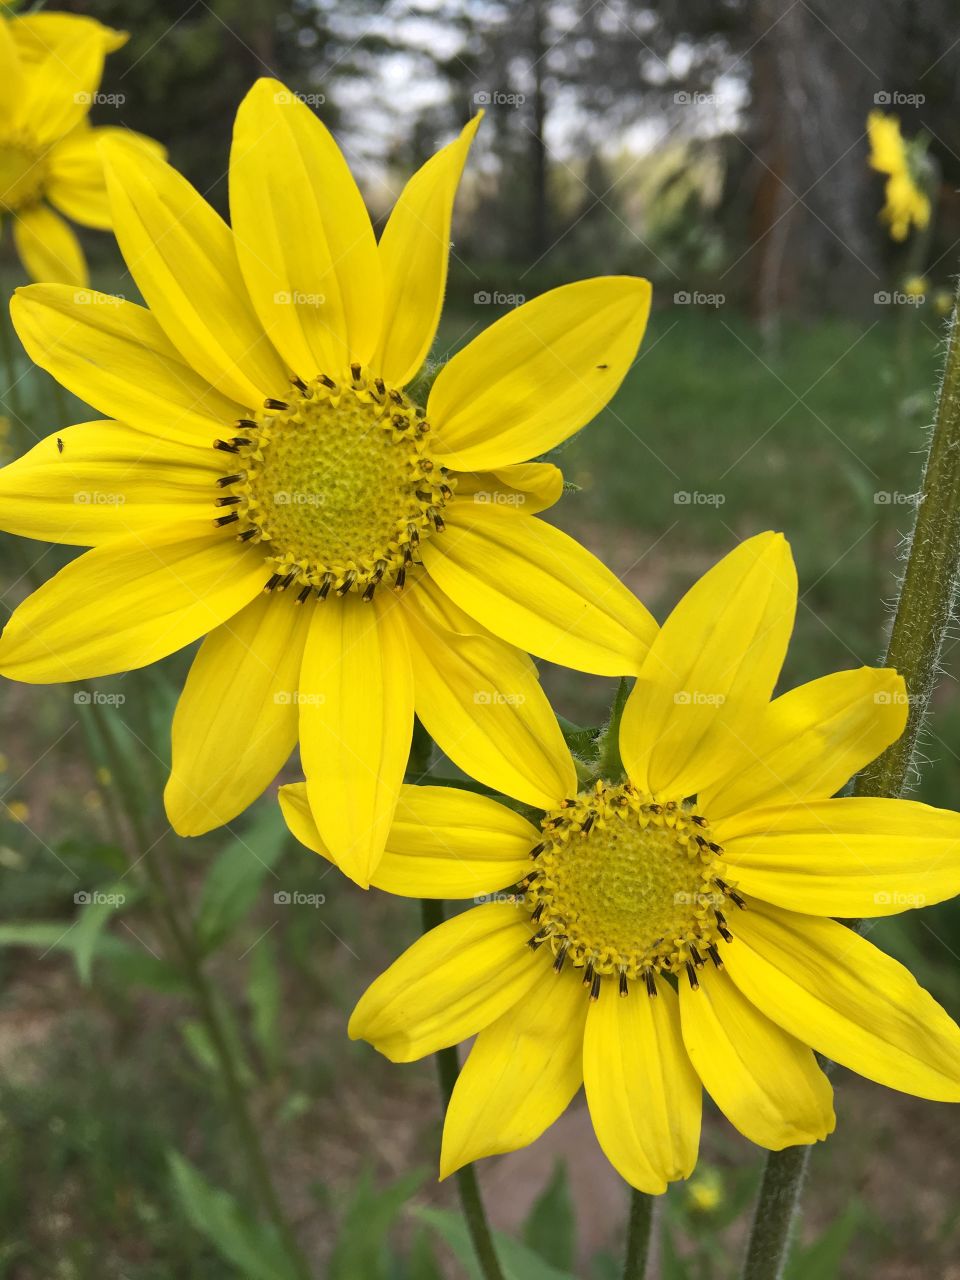 Beautiful, bright, cheerful, wild sunflowers. Yellow sunflowers dancing in the sunlight.